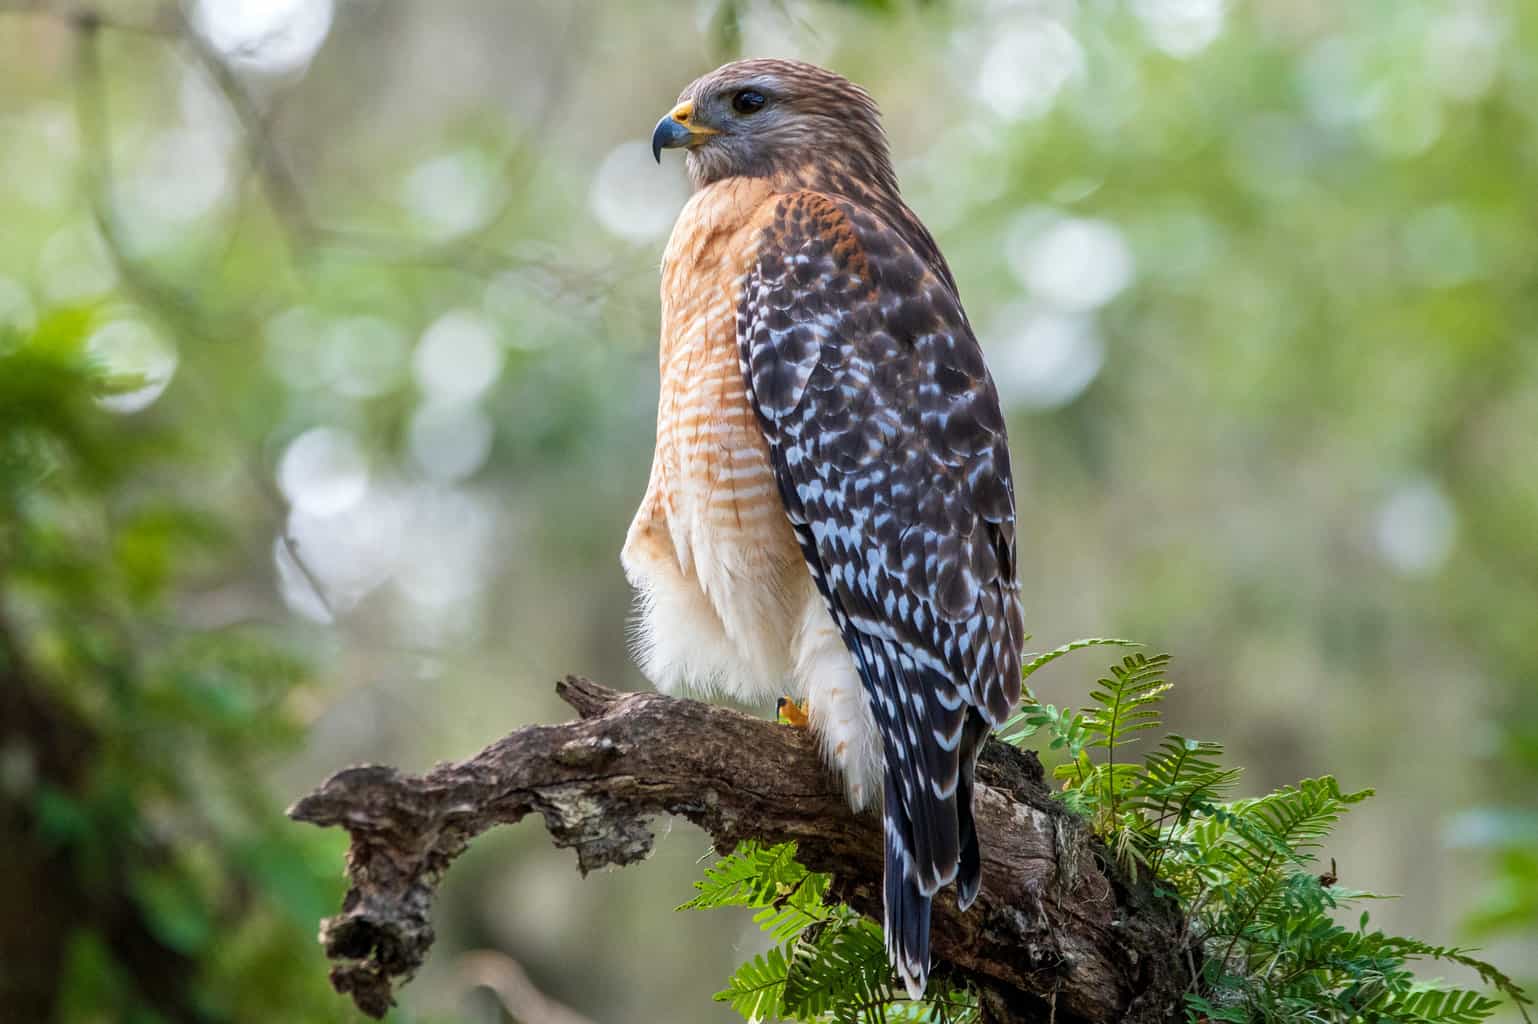 Halcón de hombros rojos contra halcón de Cooper: una guía para observadores de aves